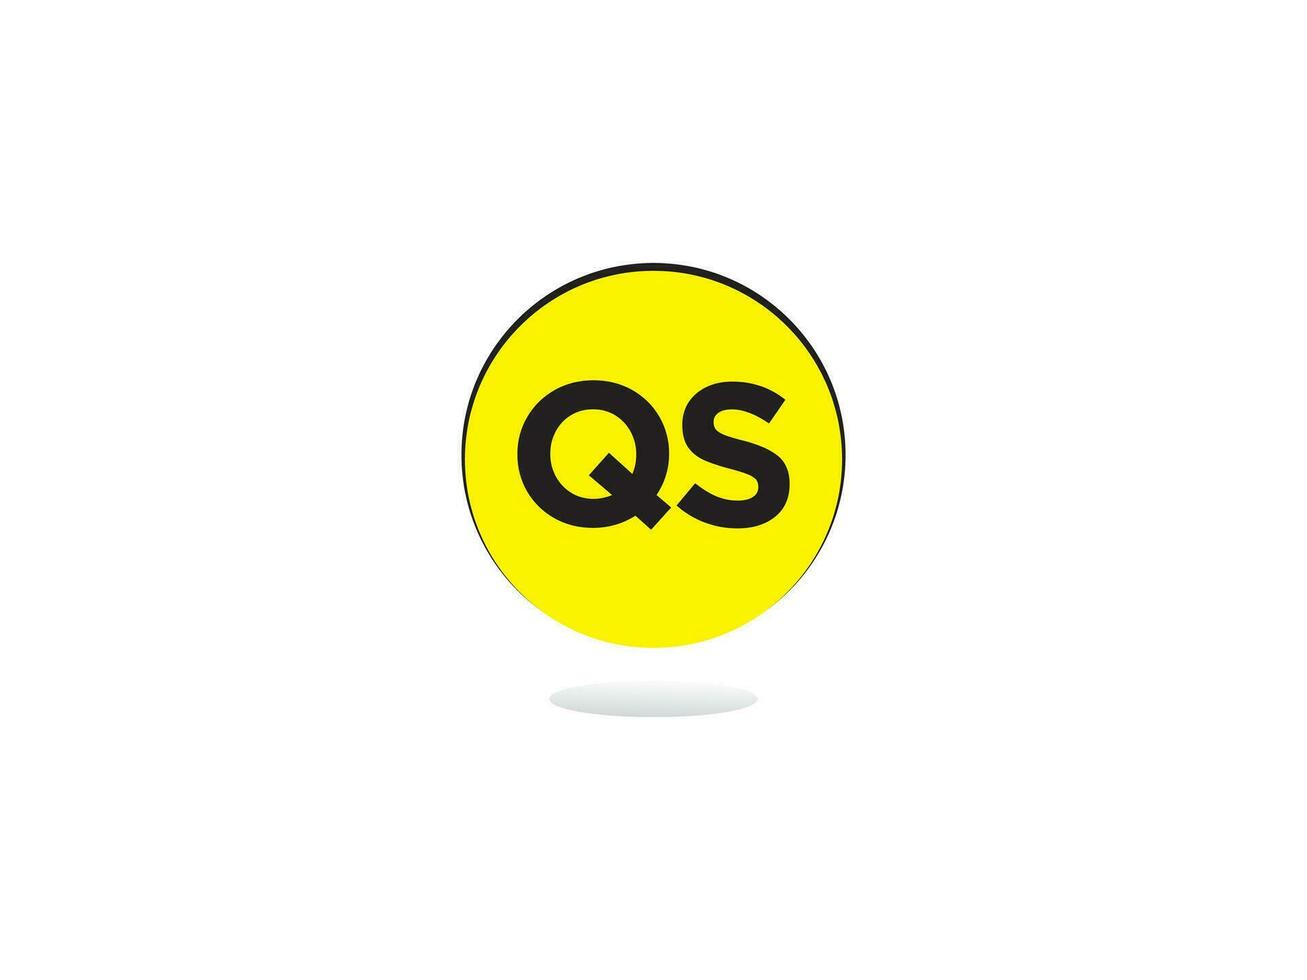 minimalista qs carta logotipo círculo, único qs logotipo ícone vetor